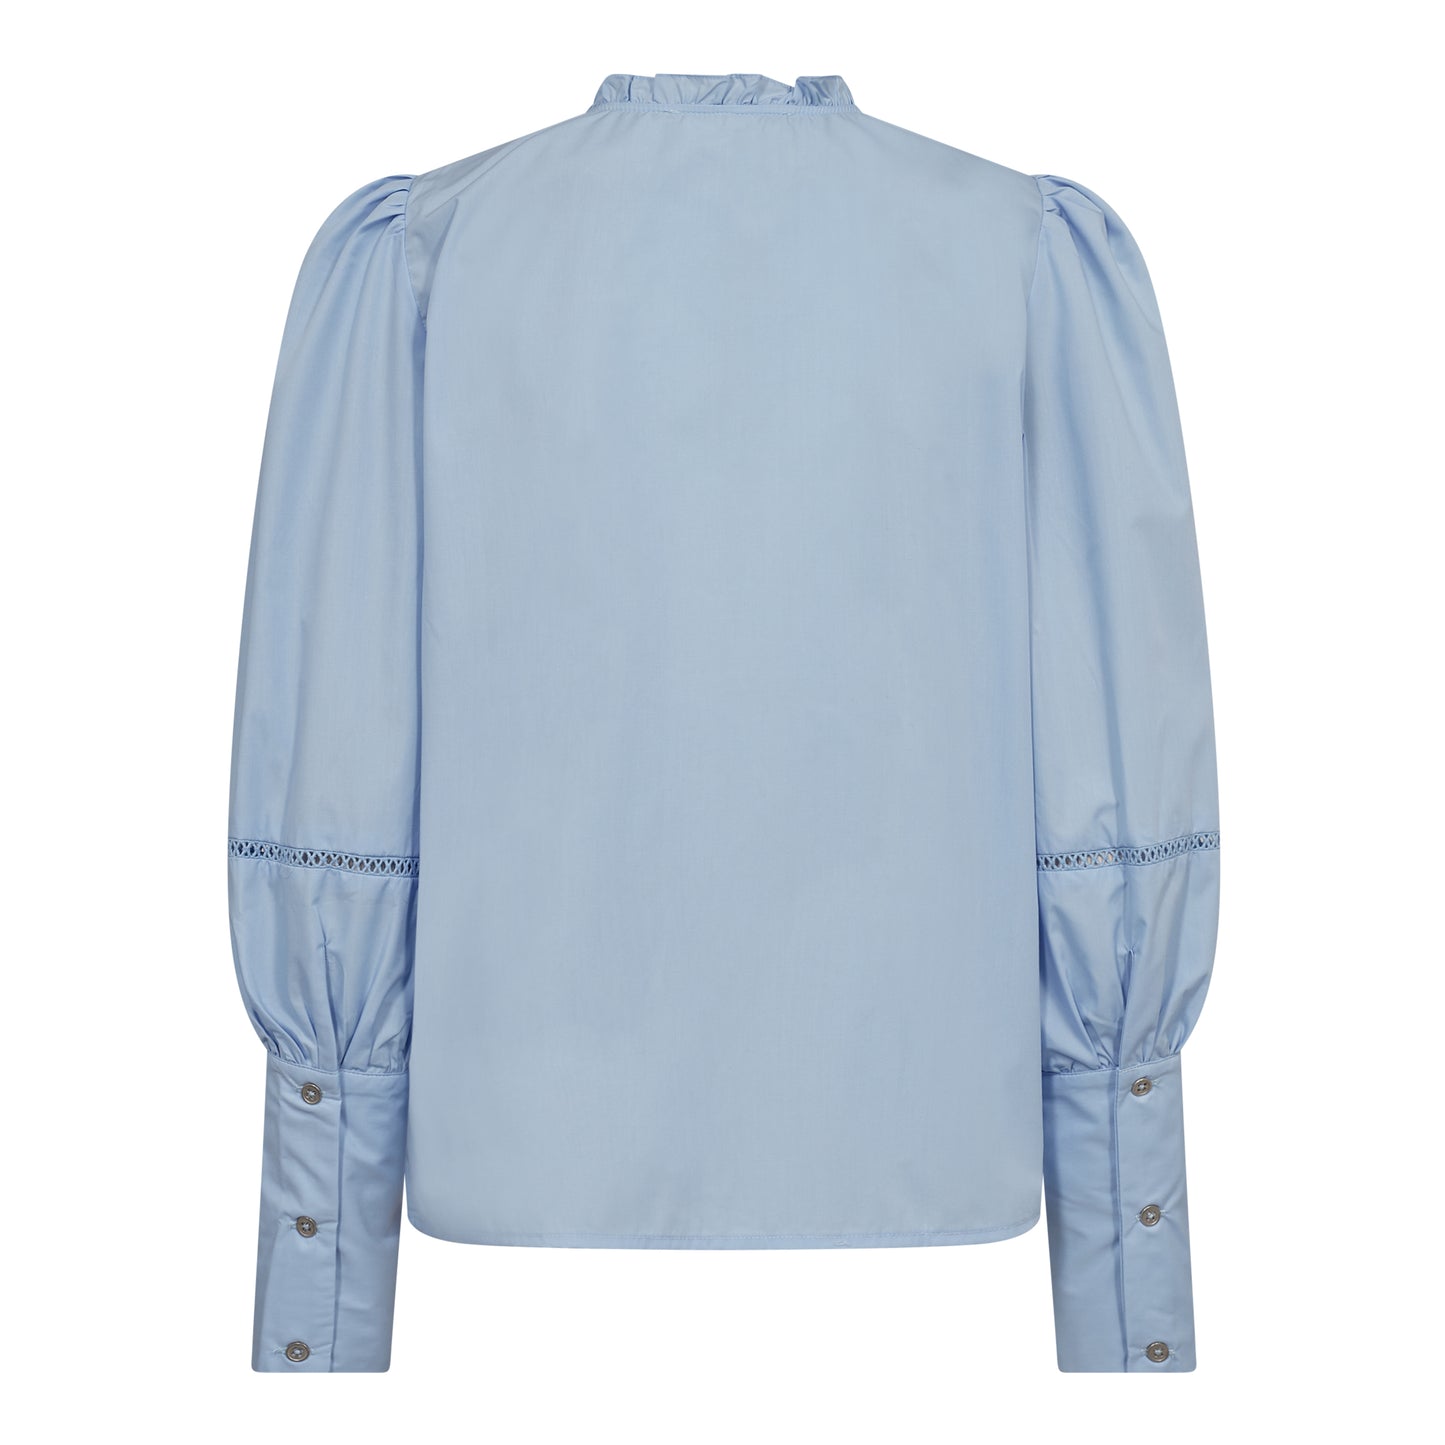 Cocouture - BonnieCC Lace Sleeve Shirt - Pale Blue